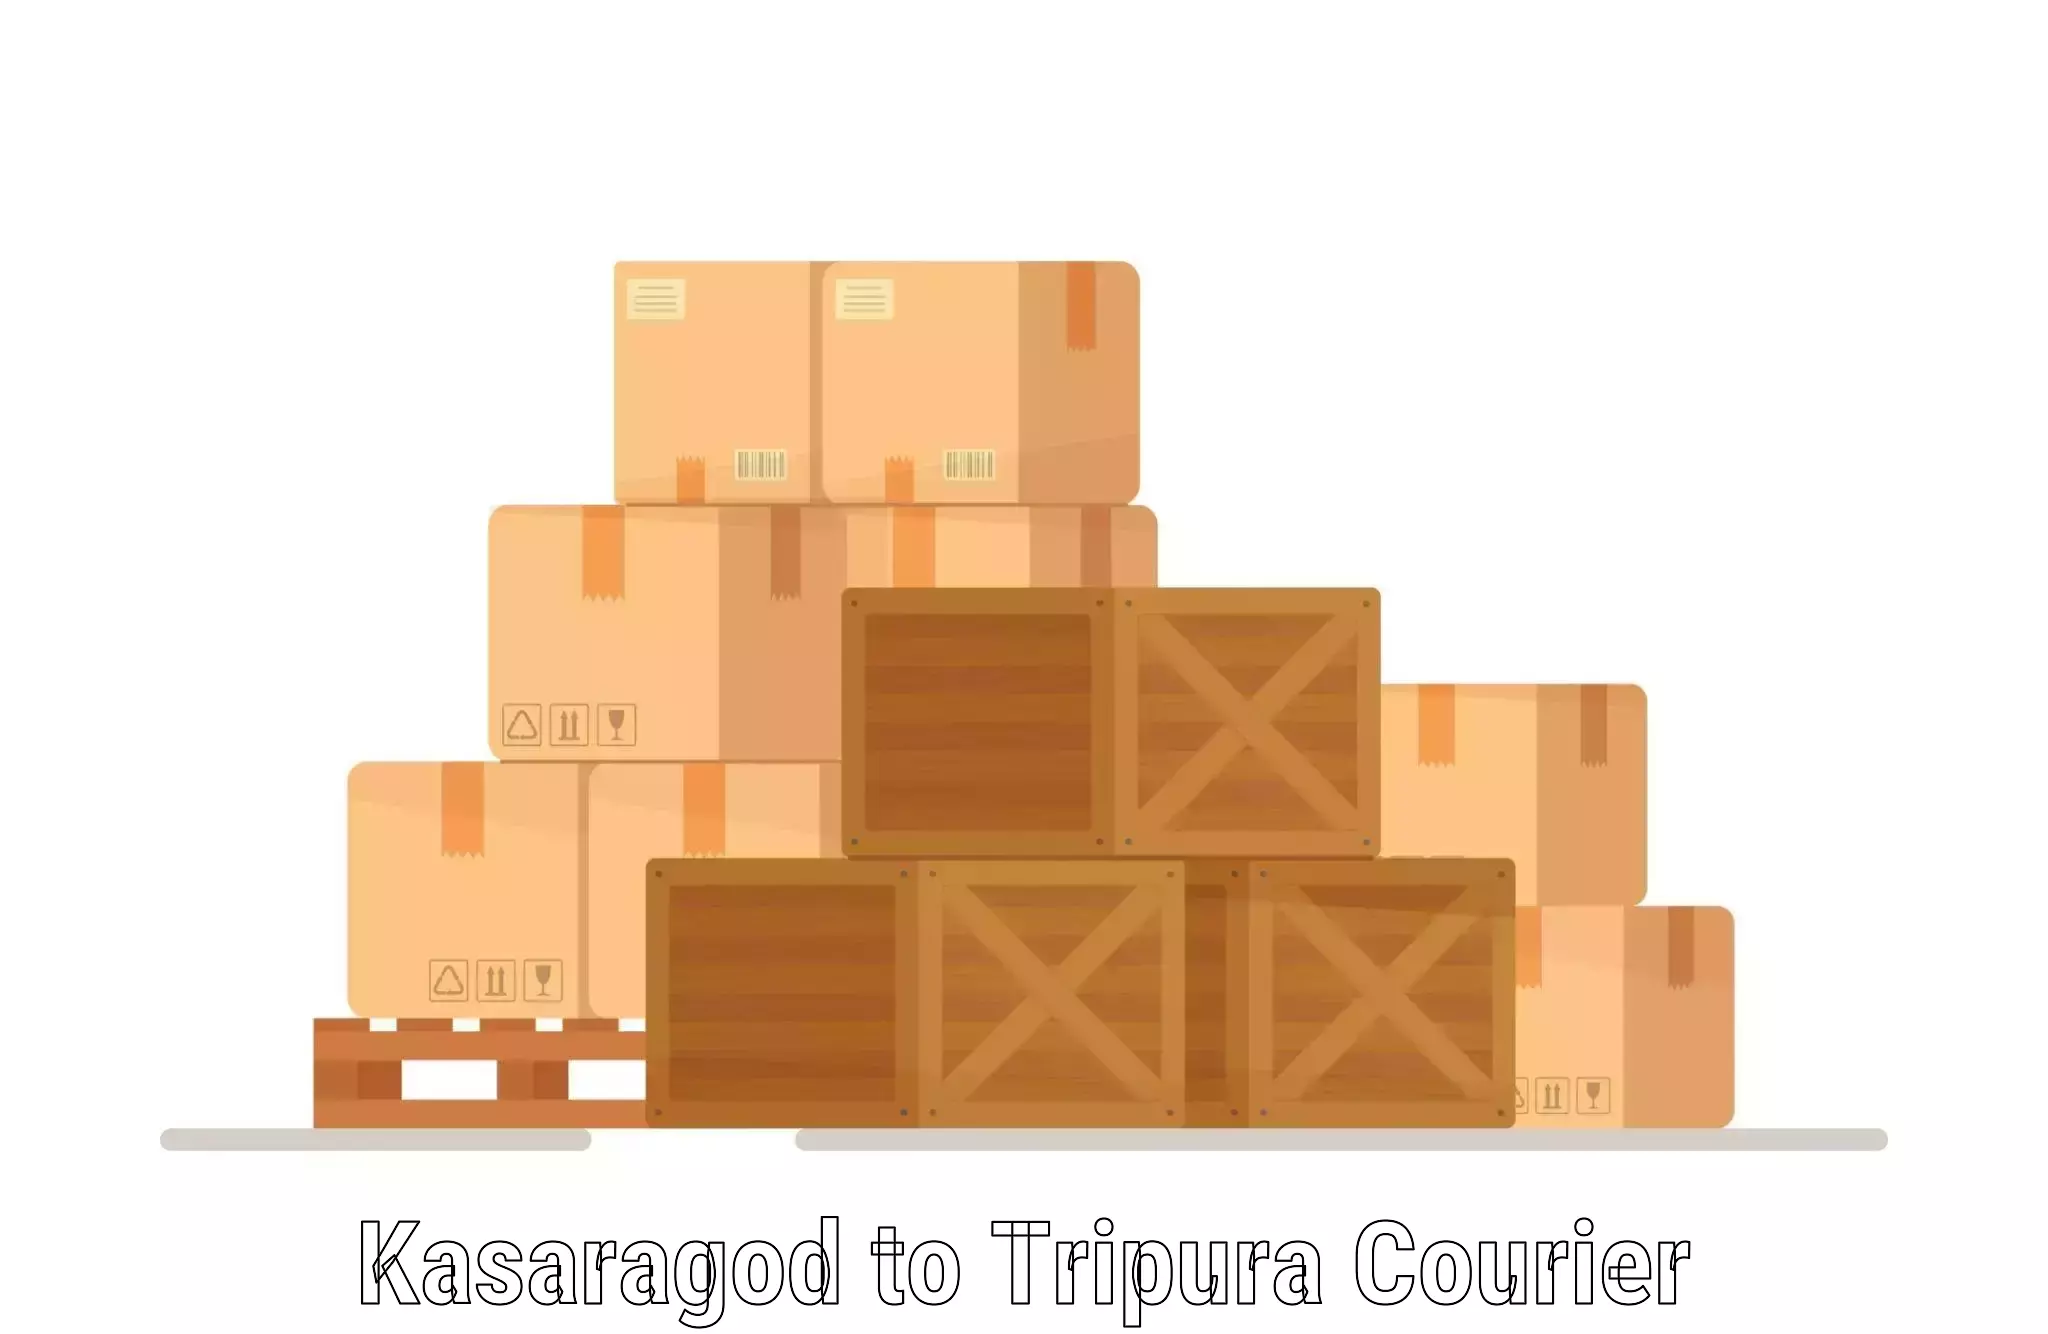 Express logistics providers Kasaragod to Tripura